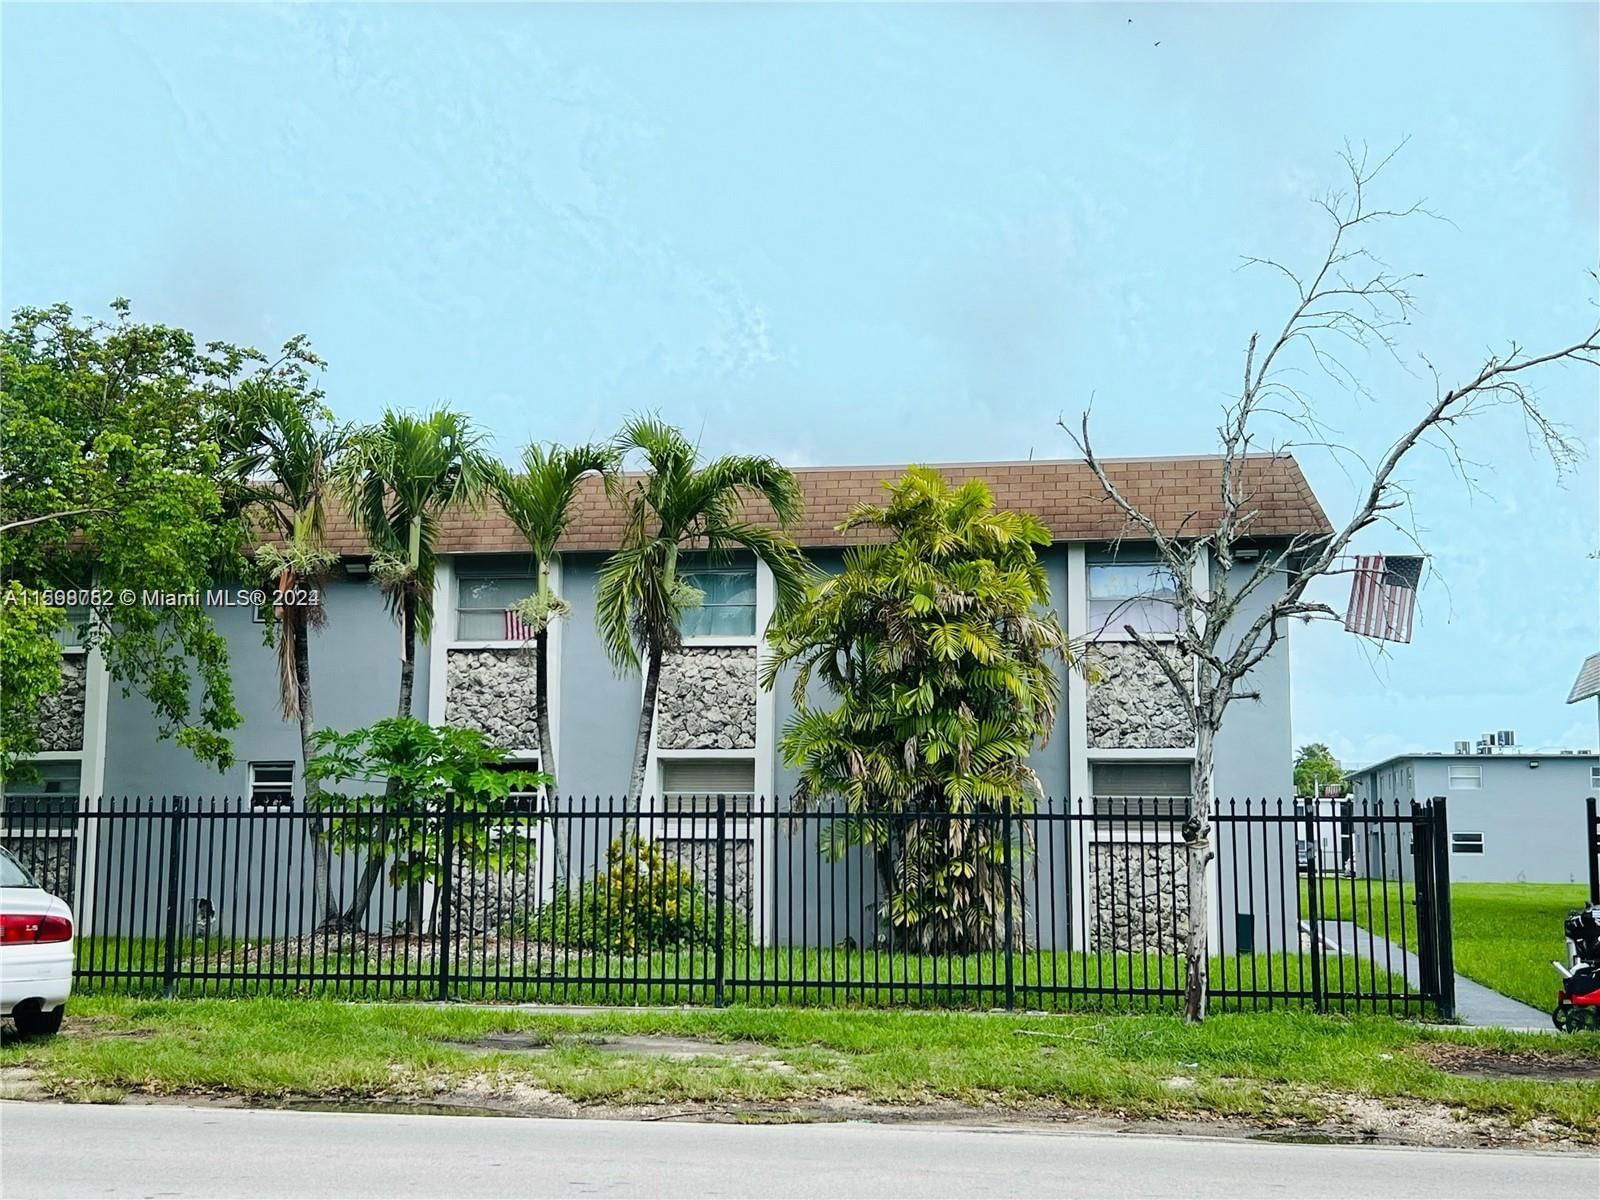 Real estate property located at 4250 67th ave #49, Miami-Dade County, Gables Edge Condo, Miami, FL